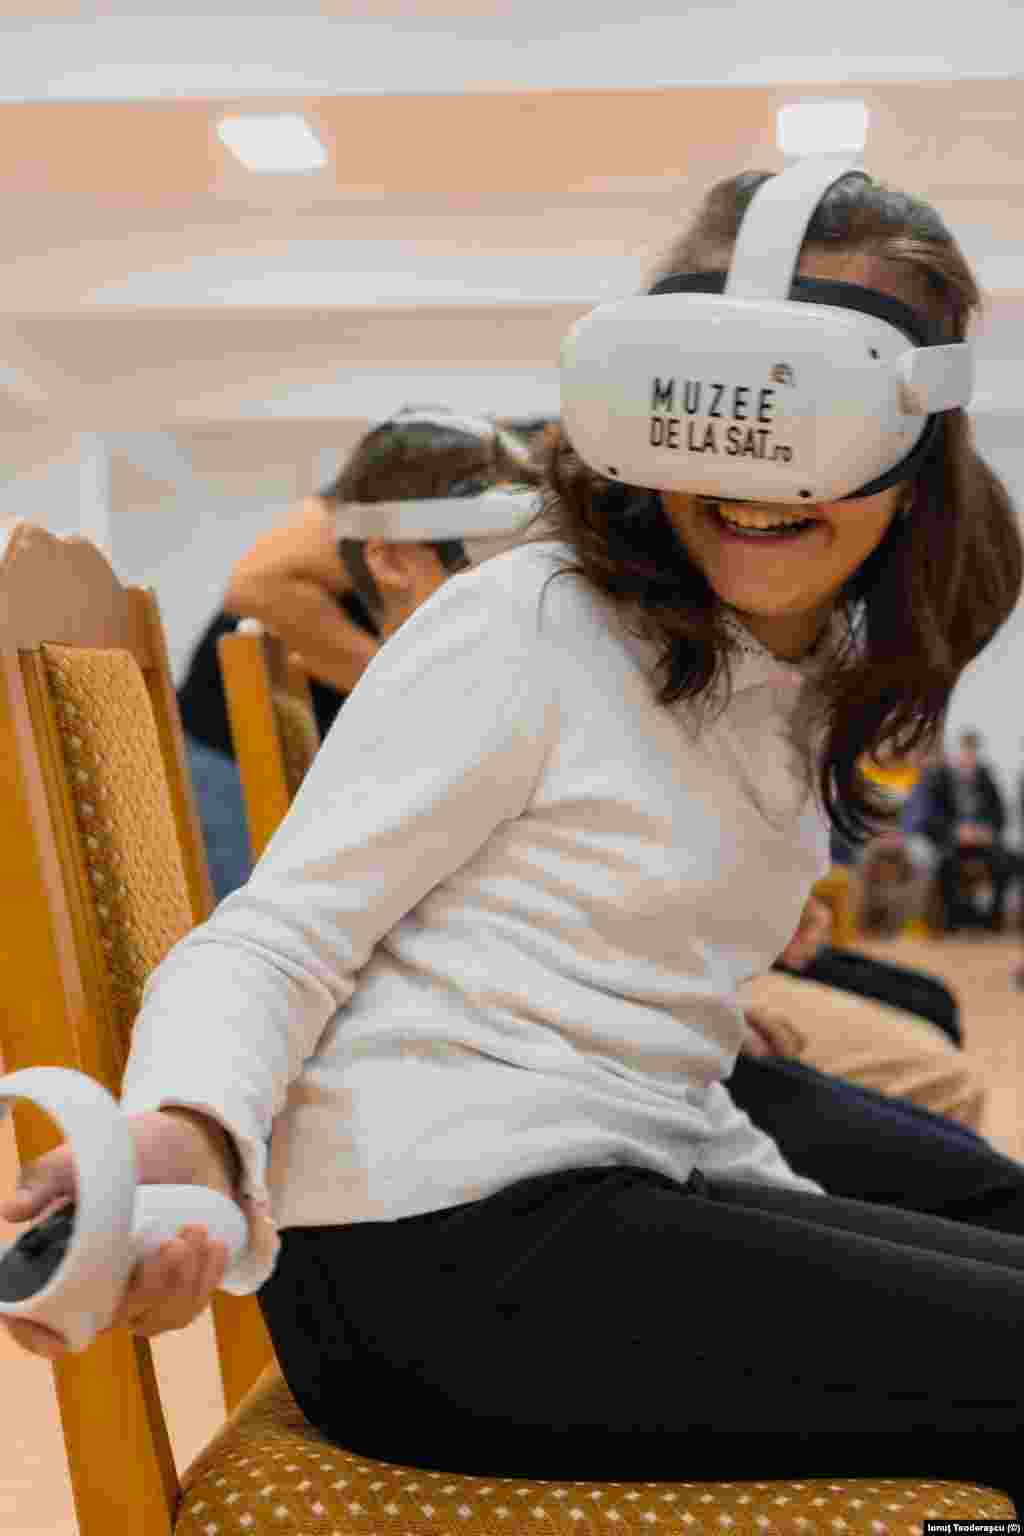 Aproape 1 000 de elevii din 10 școli din medii vulnerabile vor explora tururi virtuale ale muzeelor prin intermediul ochelarilor de realitate virtuală (VR). Proiectul este demarat împreună cu Teach for Romania, o organizație non-guvernamentală din domeniul educației.&nbsp;